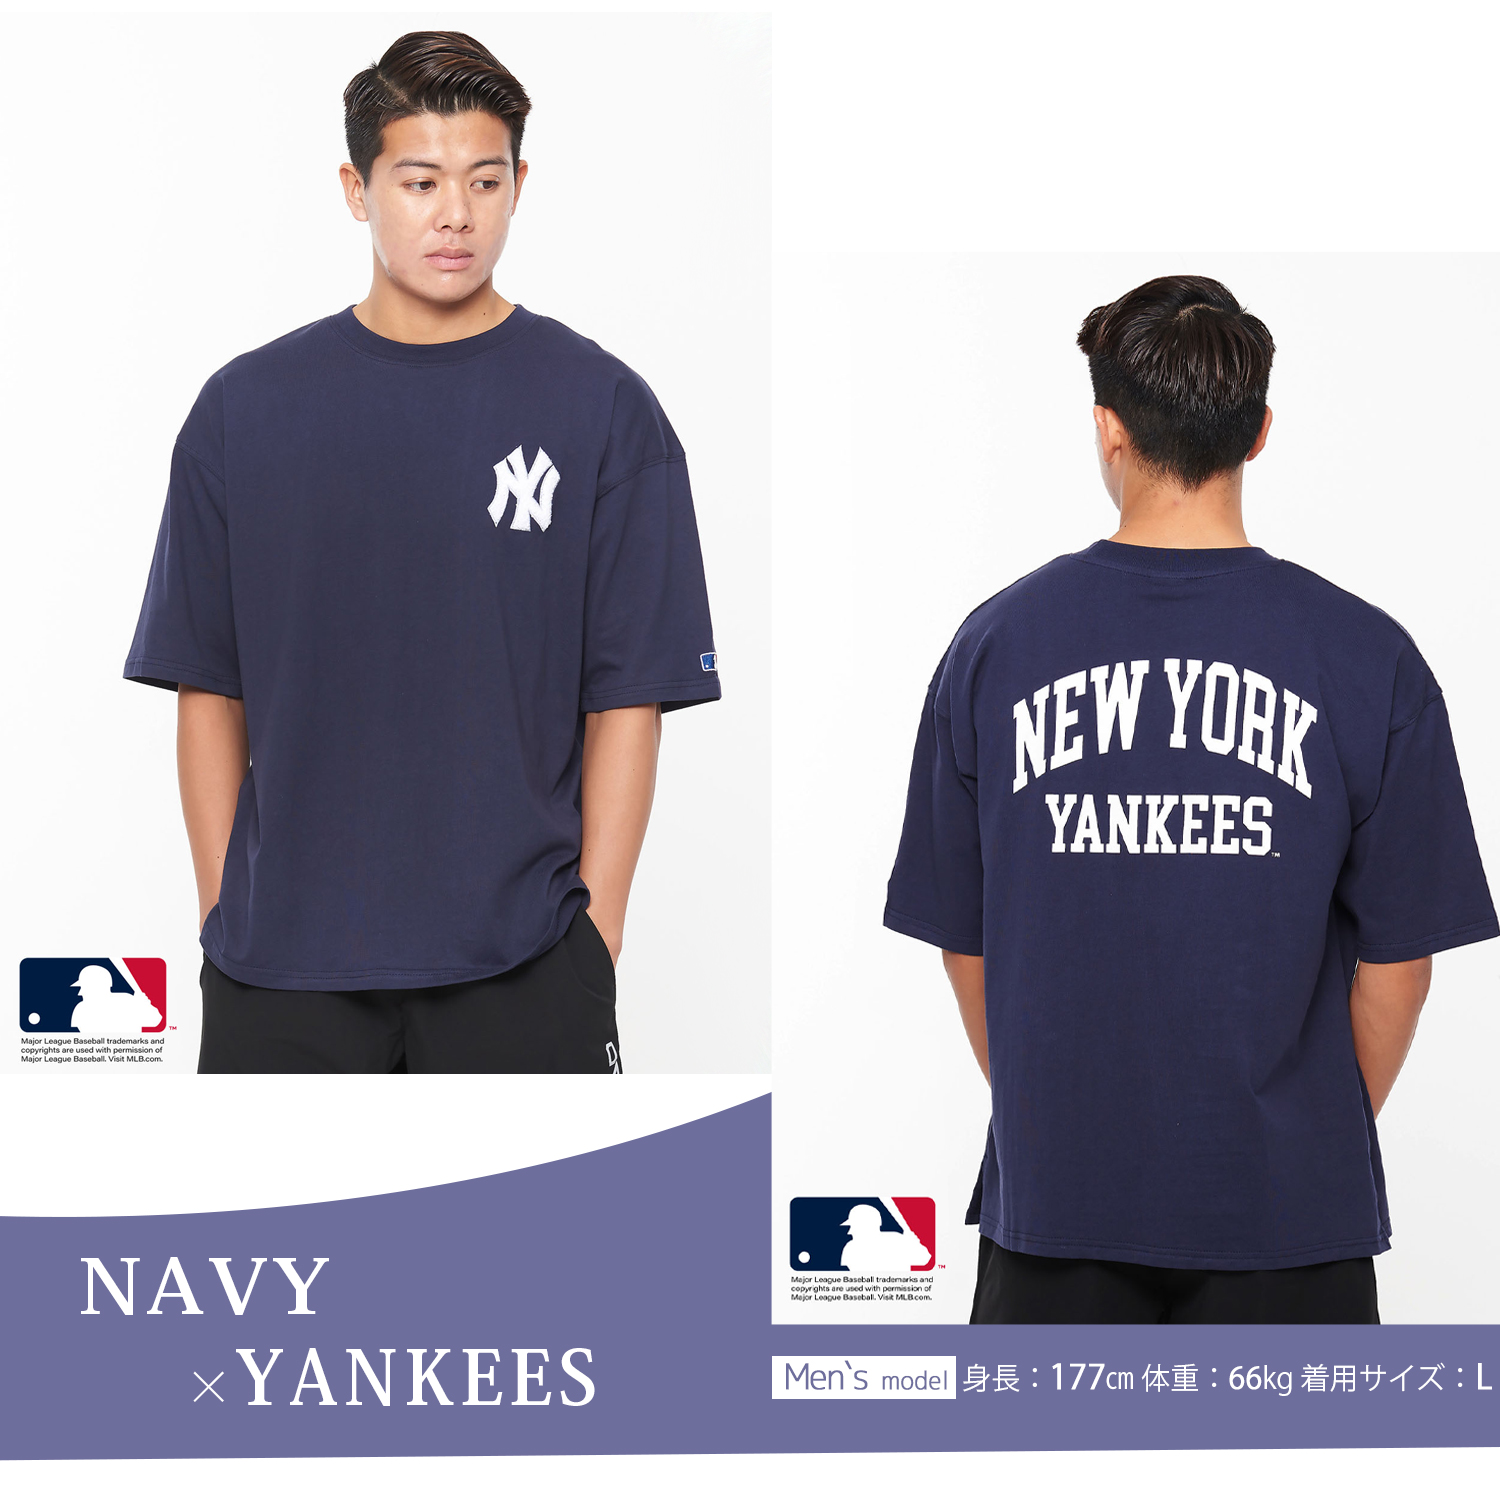 MLB エムエルビー Tシャツ メンズ 半袖 綿 メジャーリーグ 野球 Tシャツ ベースボール 練習着 スポーツウェア おしゃれ